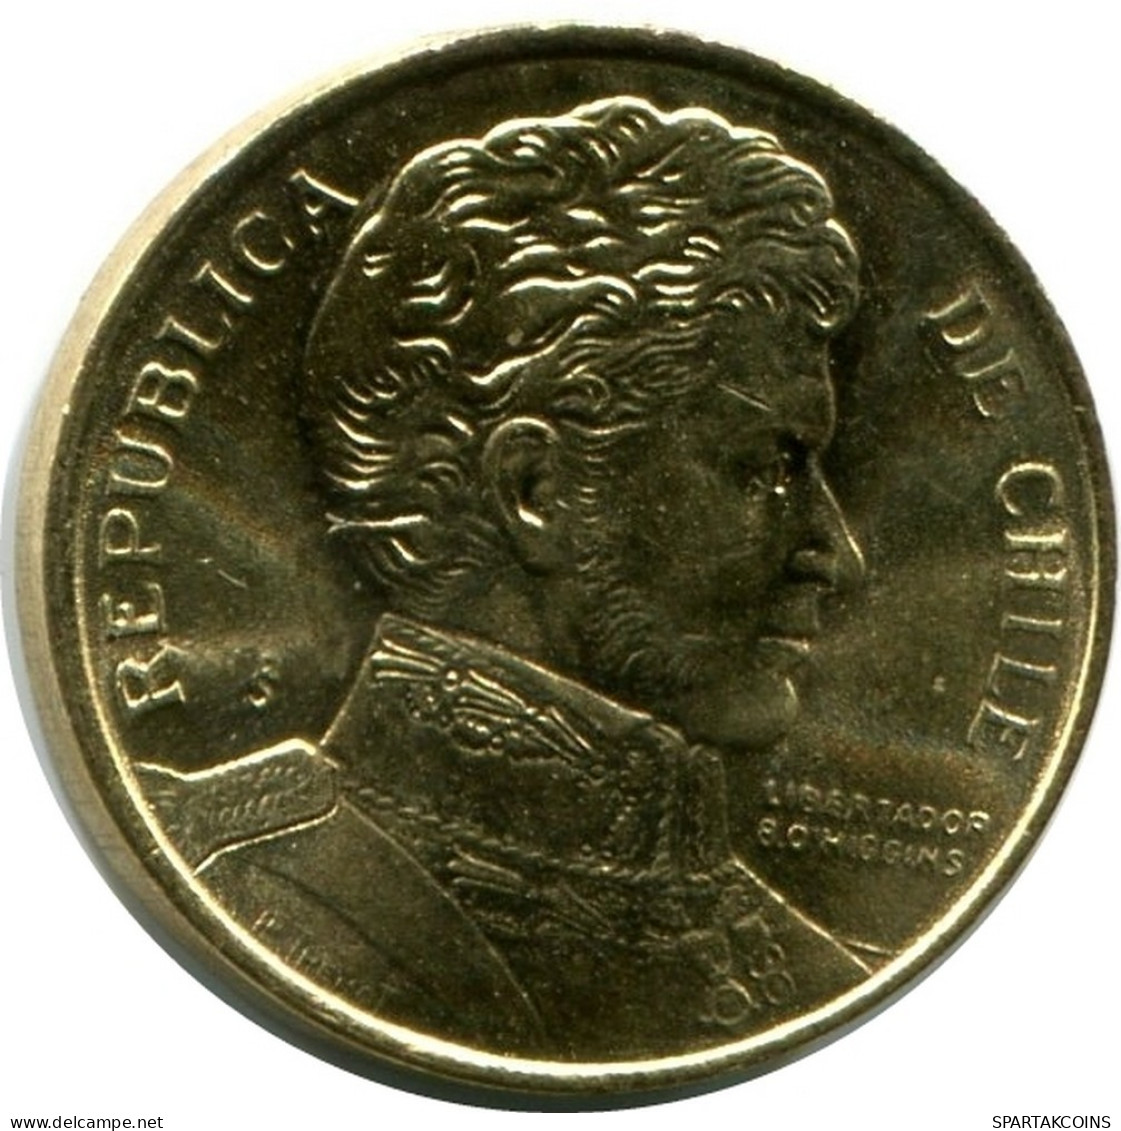 1 PESO 1990 CHILE UNC Coin #M10070.U.A - Chile